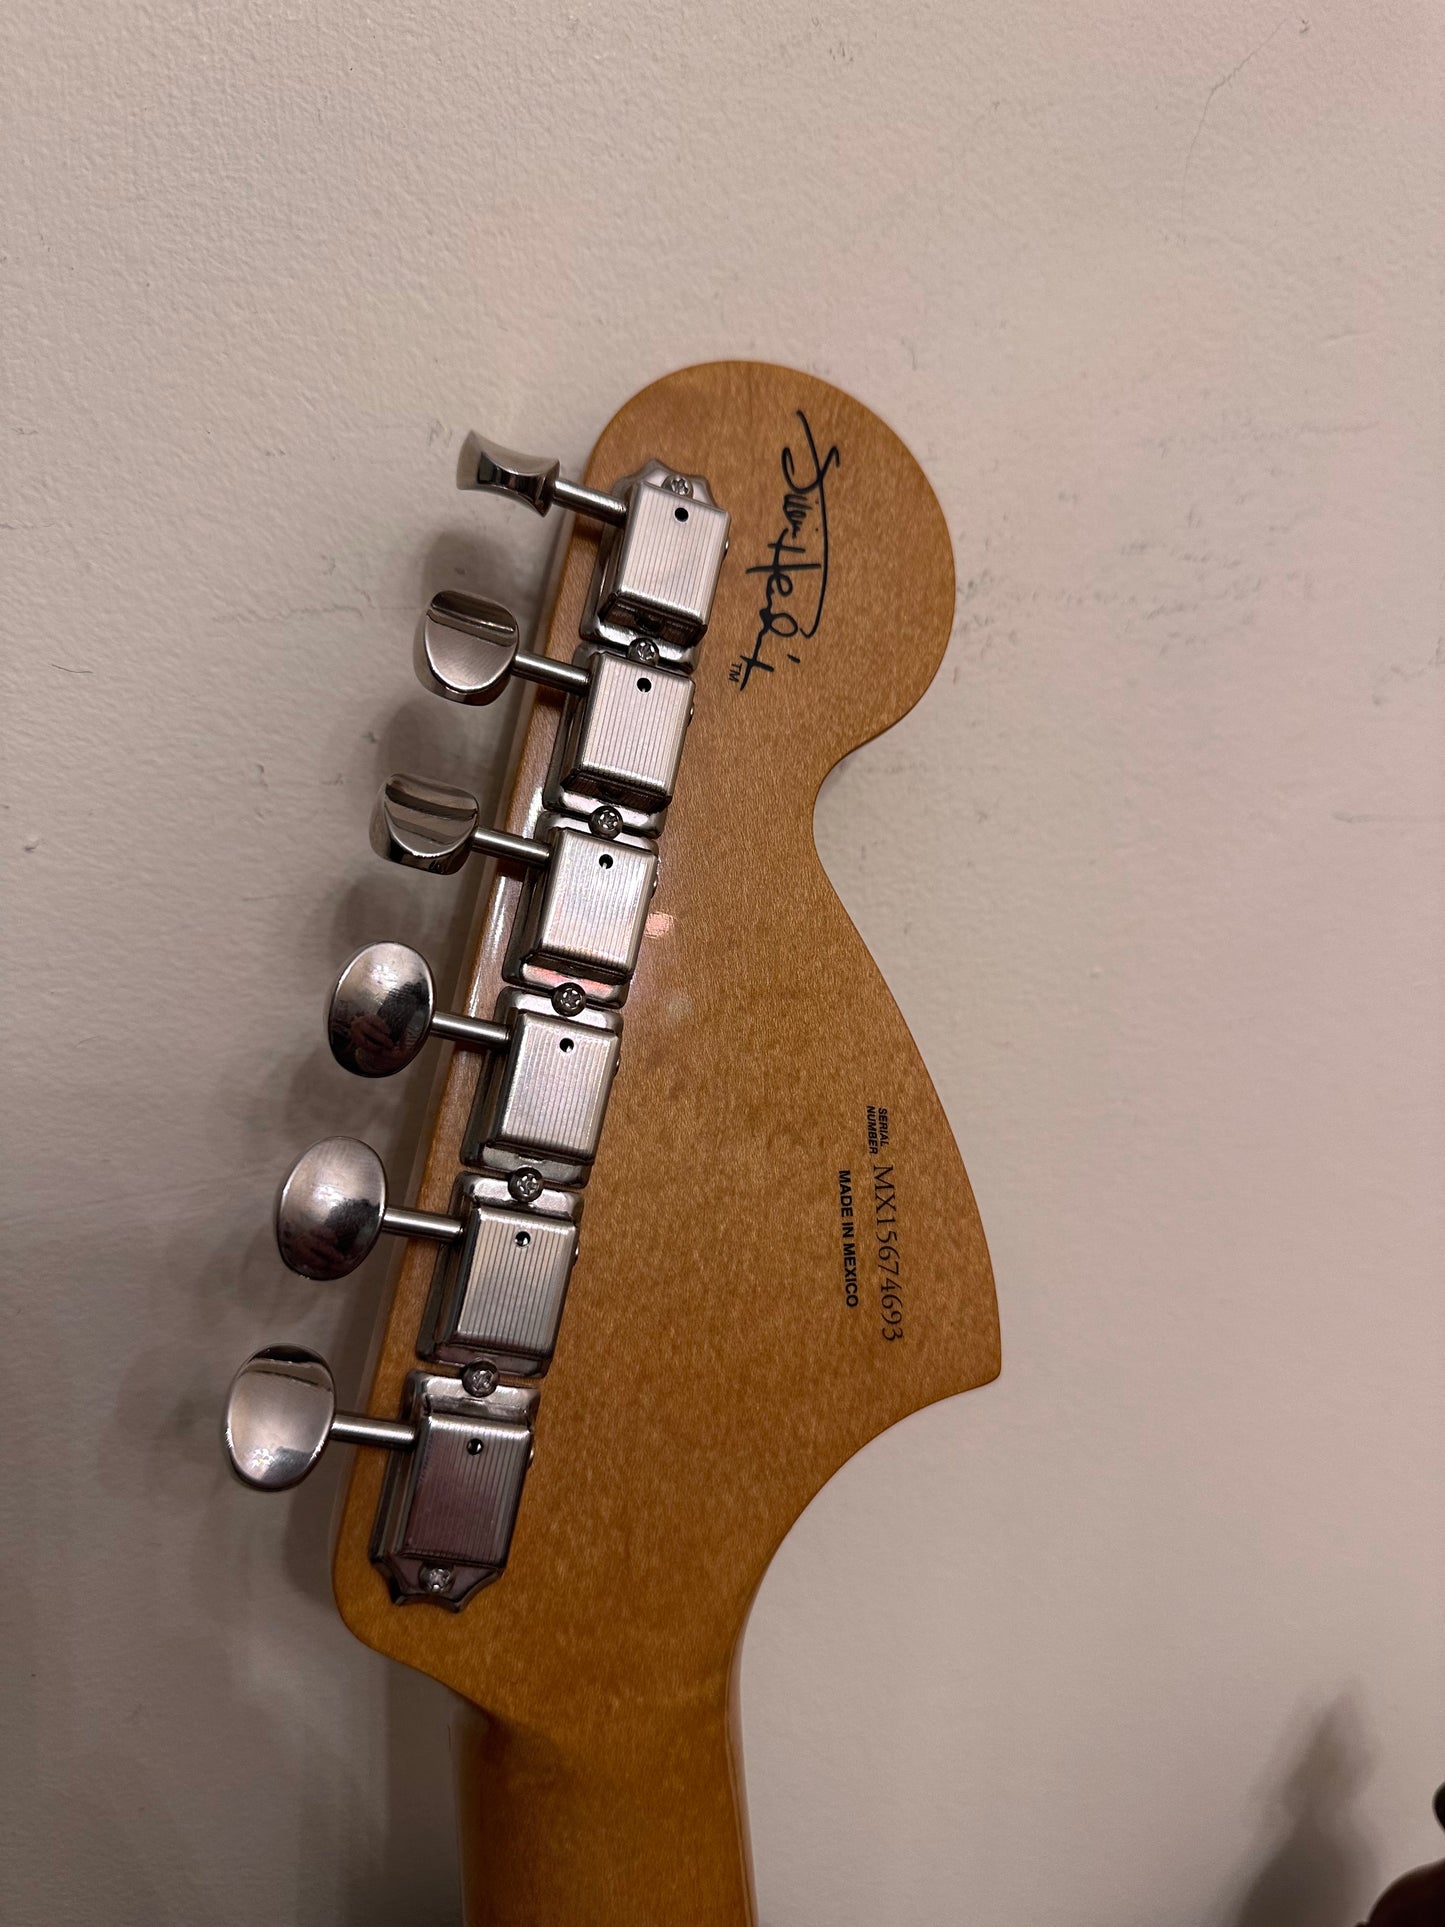 Fender Jimi Hendrix signature Stratocaster